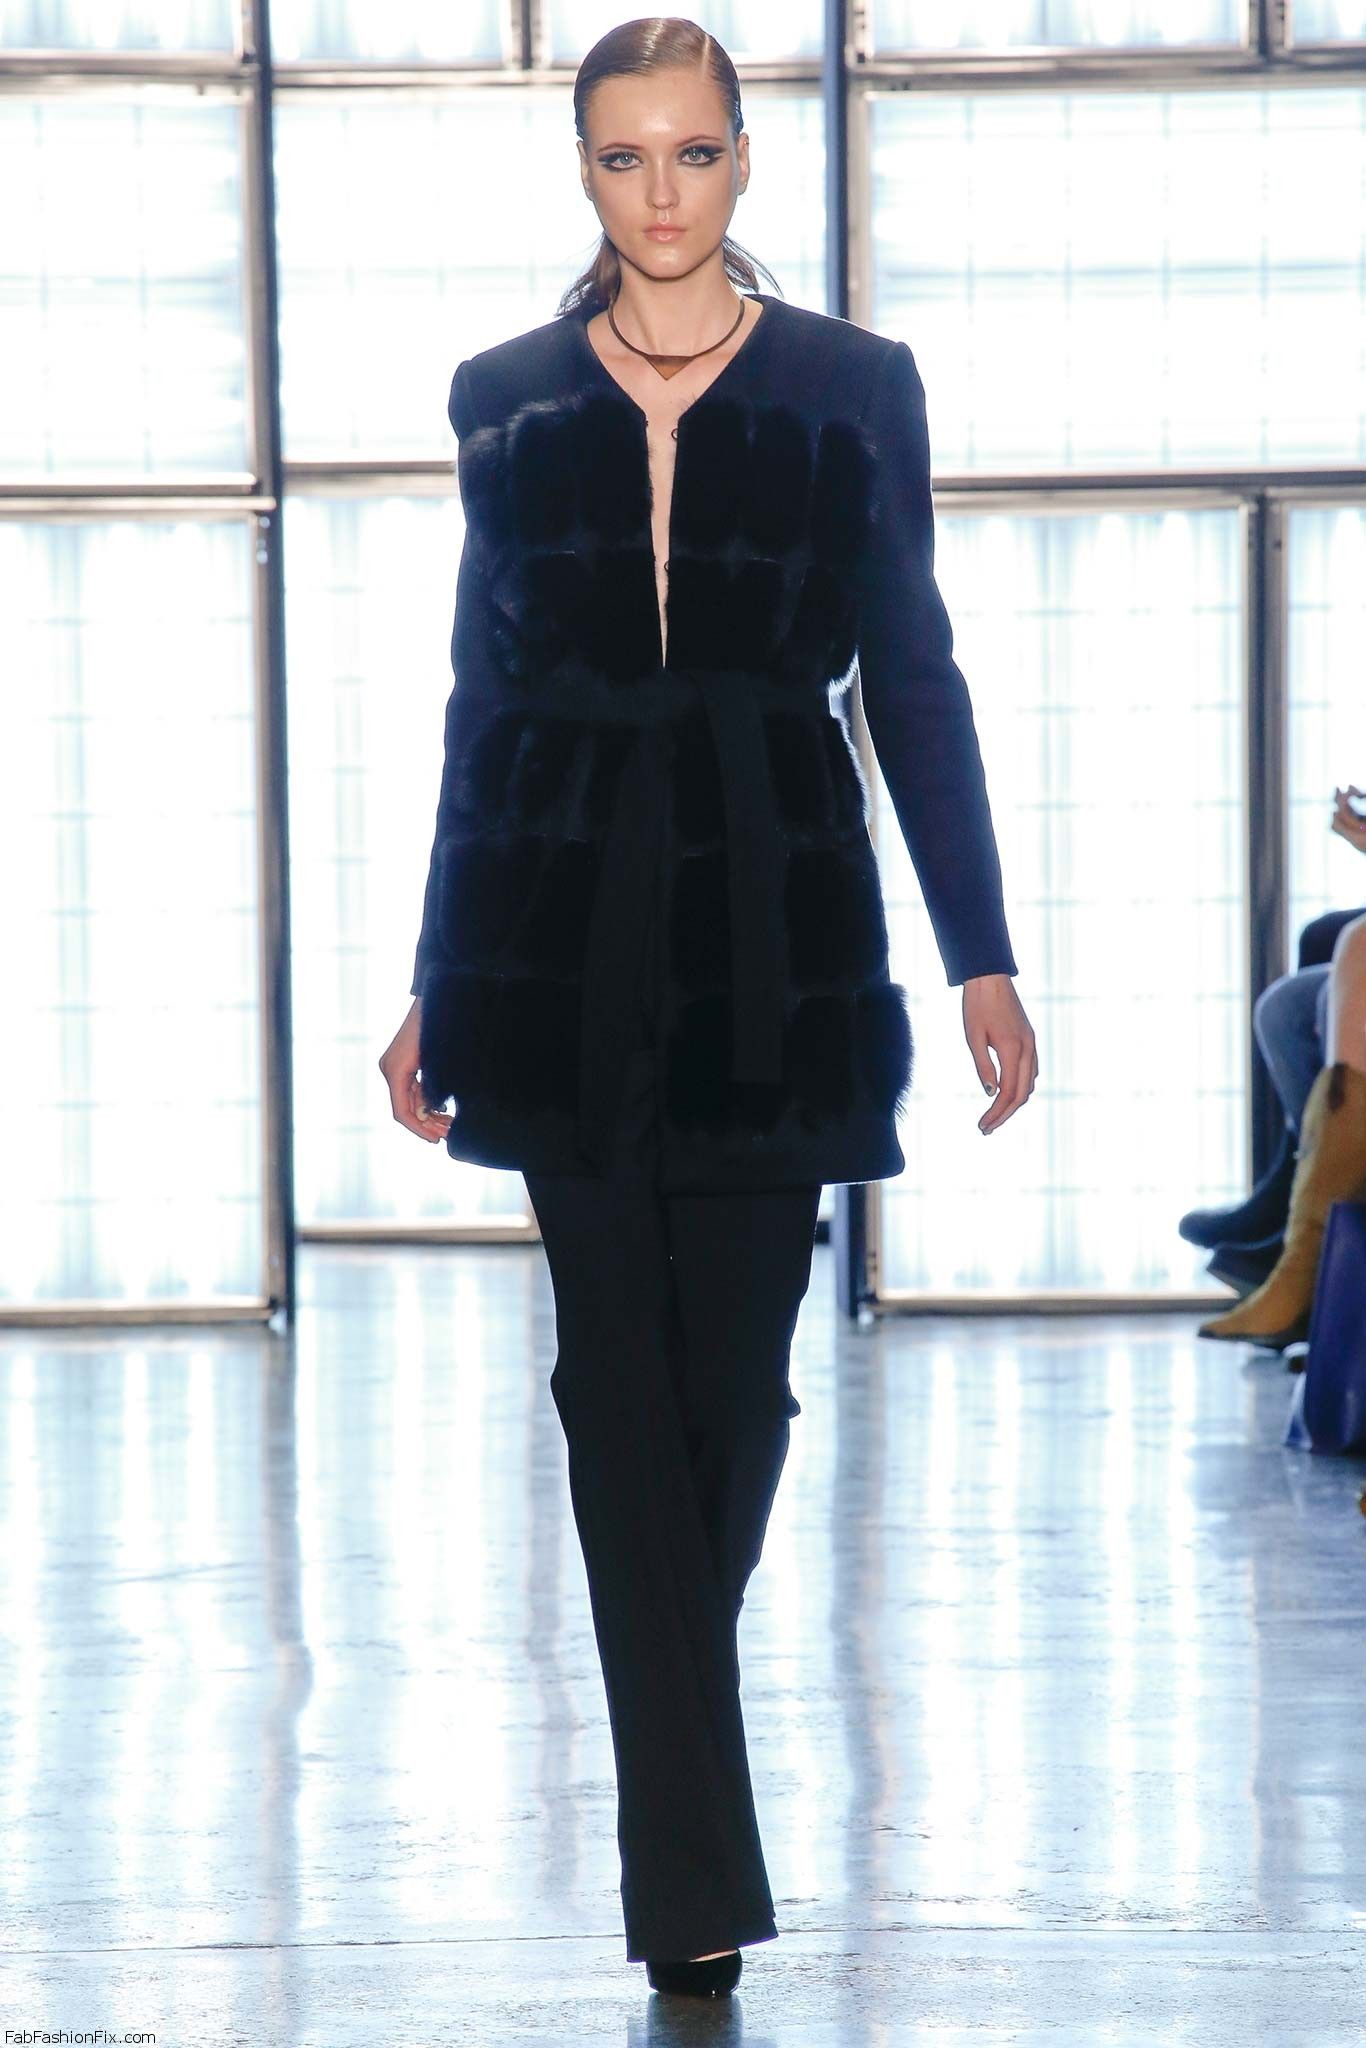 Cushnie et Ochs fall/winter 2015 collection – New York fashion week ...